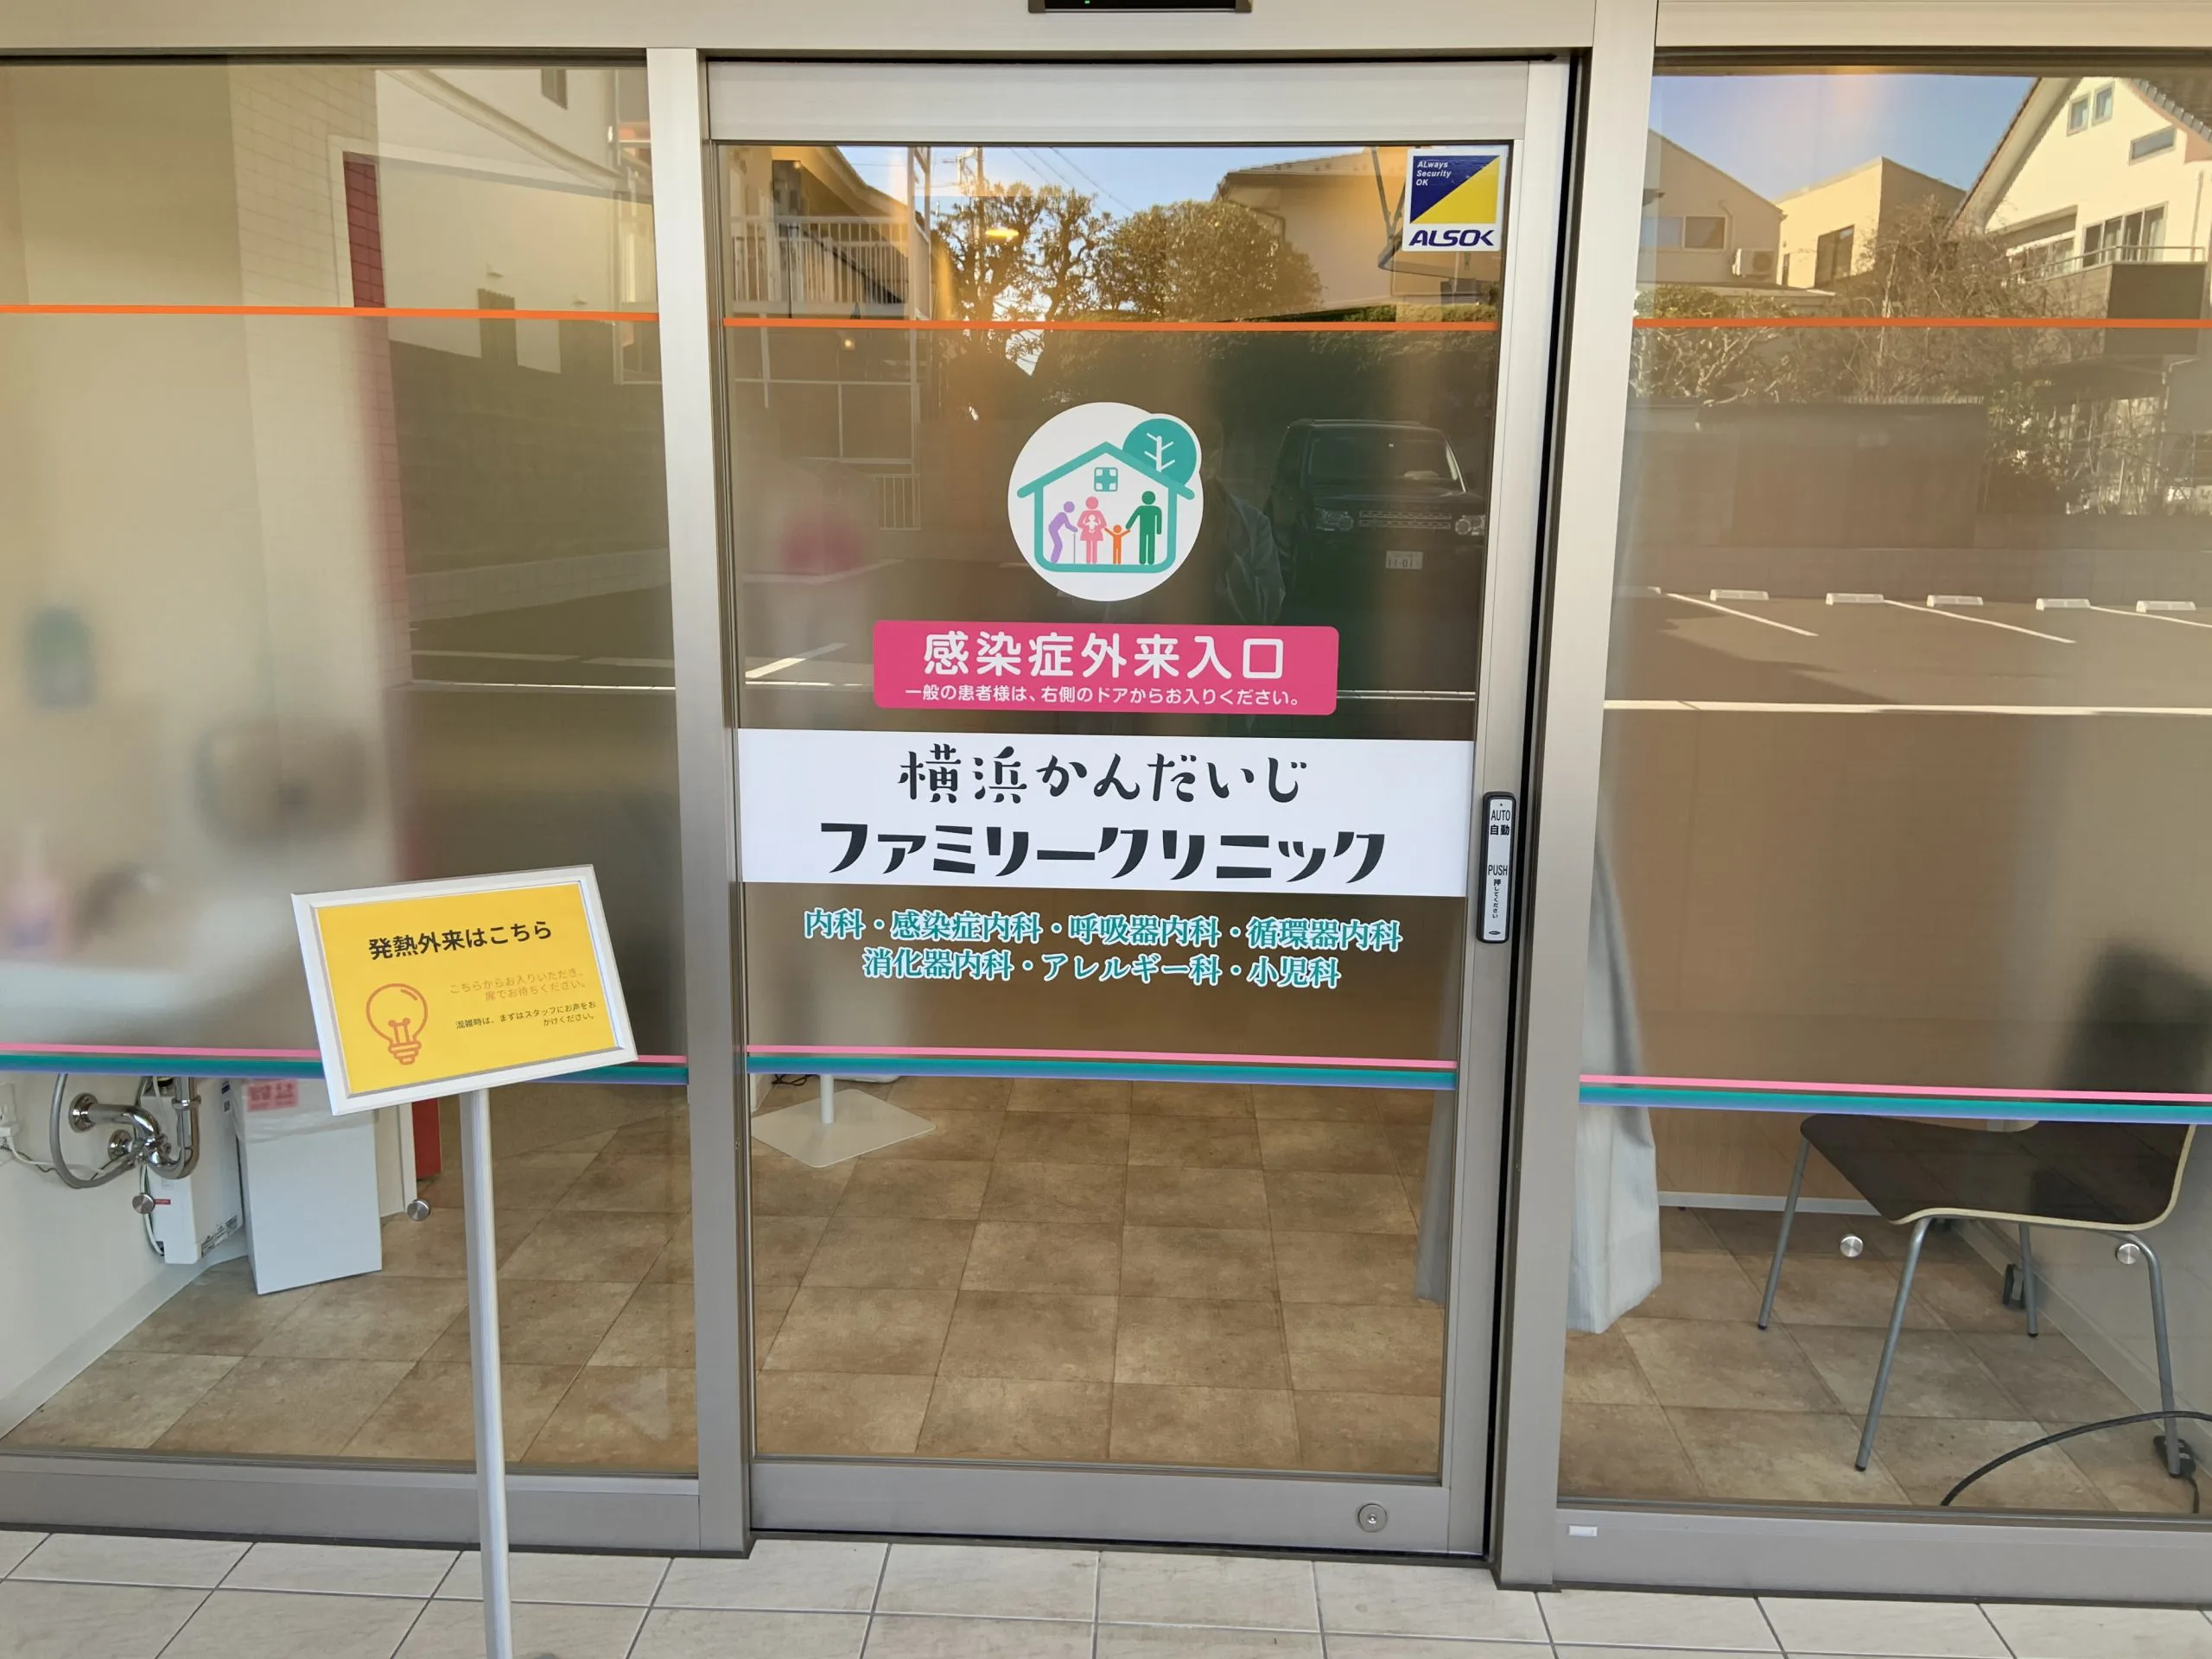 市 発熱 外来 横浜 「コロナかも？」発熱していて、心配な時、「新型コロナウイルス感染症帰国者・接触者相談センター」045